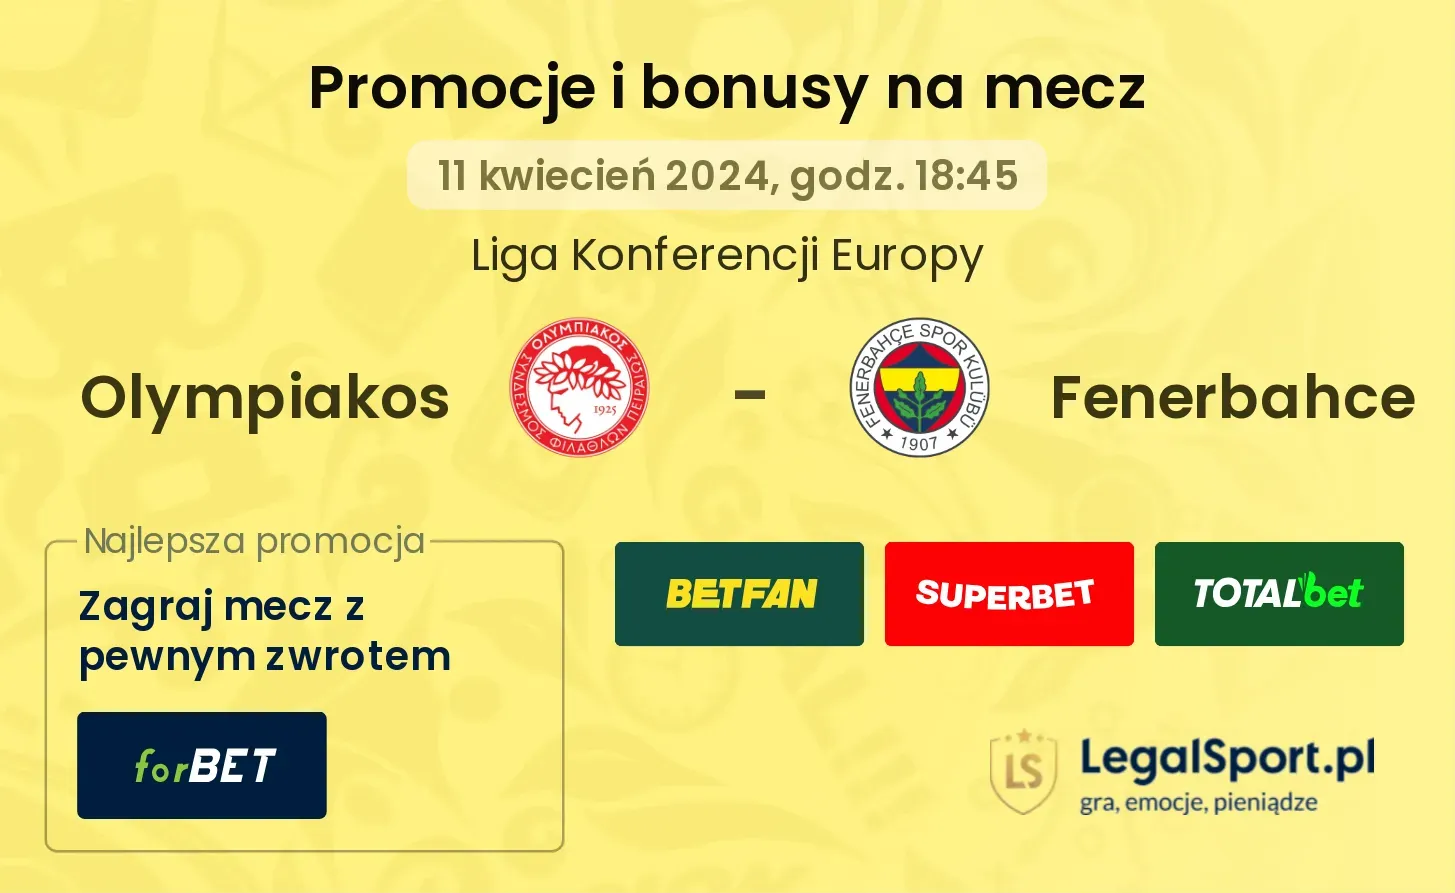 Olympiakos - Fenerbahce promocje bonusy na mecz